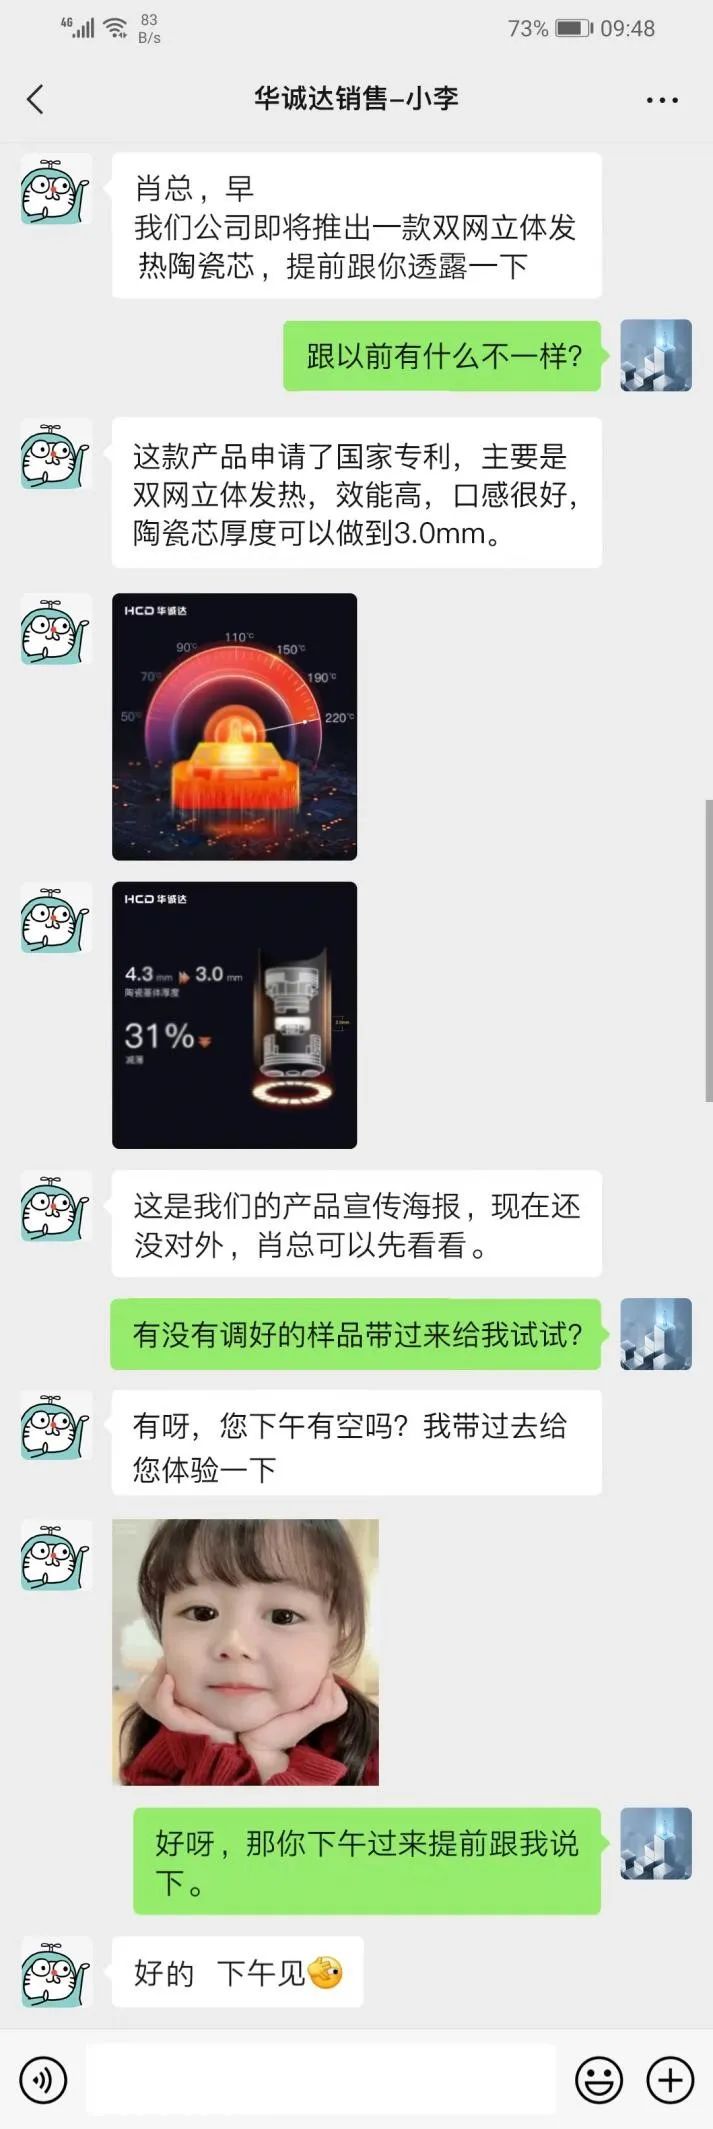 网传华诚达将发布的一款陶瓷芯图，不慎泄露！